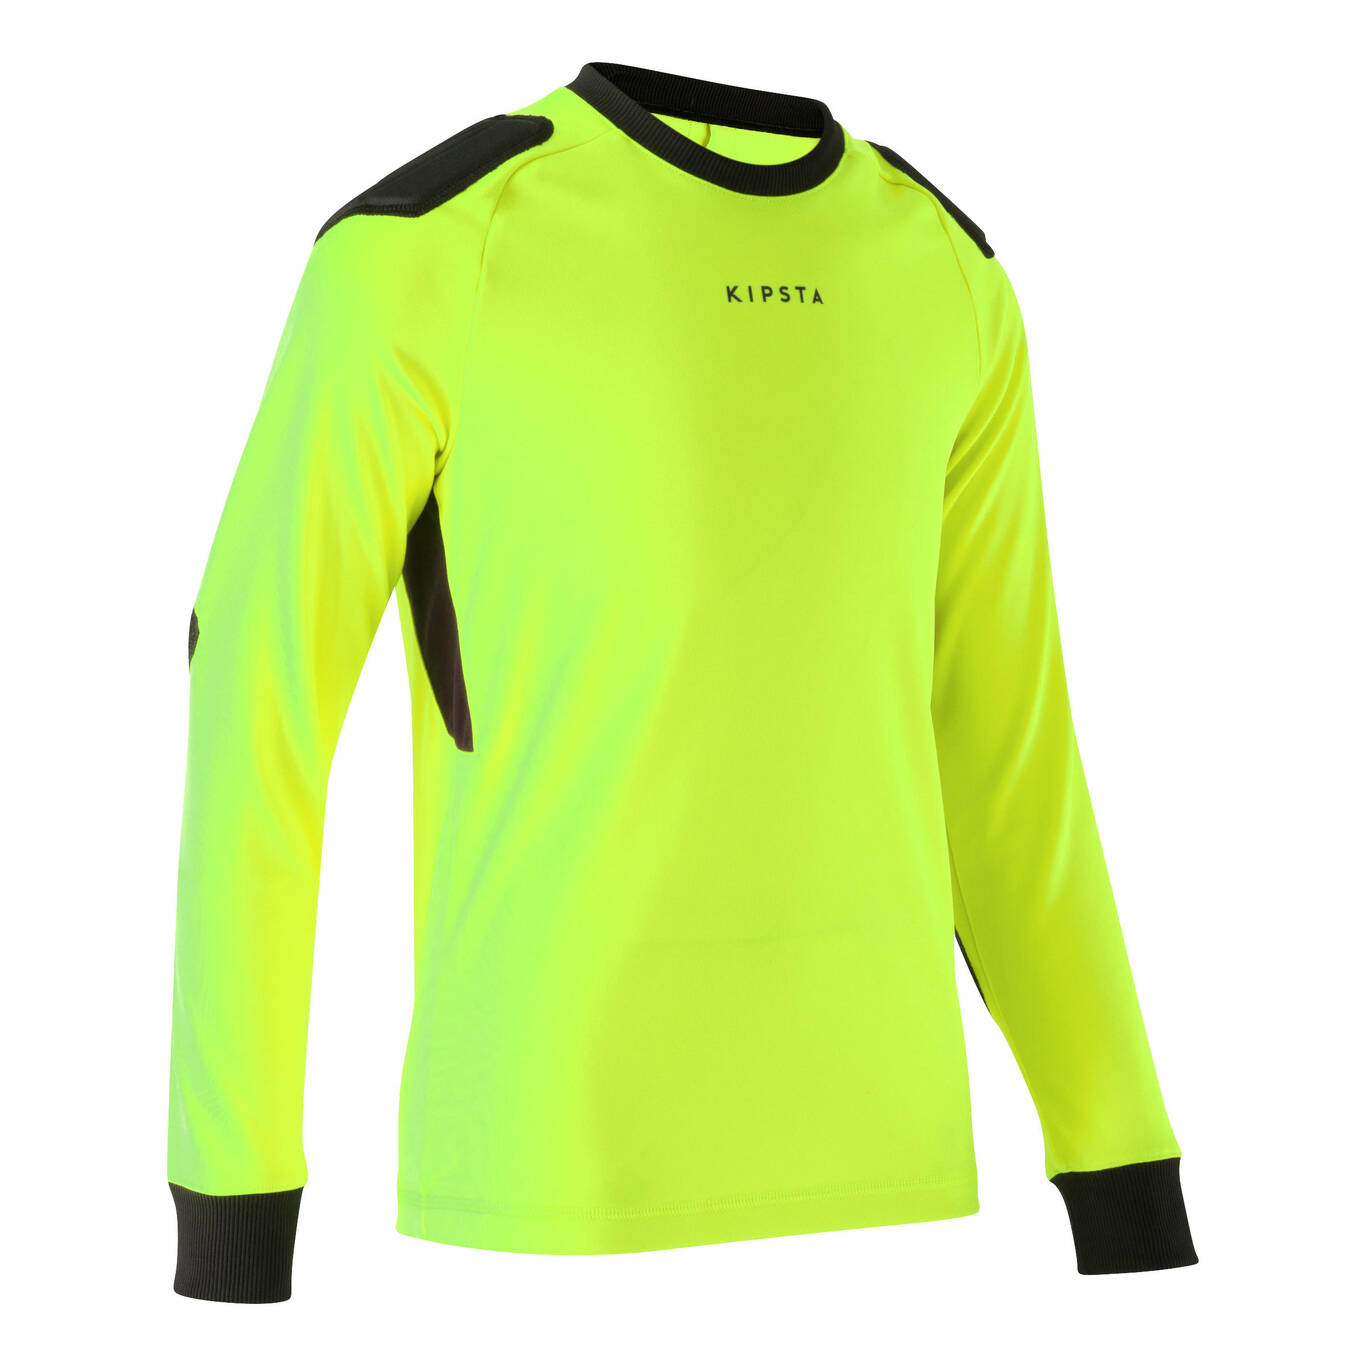 Boys Kids Soccer Goalkeeper Jersey Tops Sponge Padded Protection Goalie T- Shirt